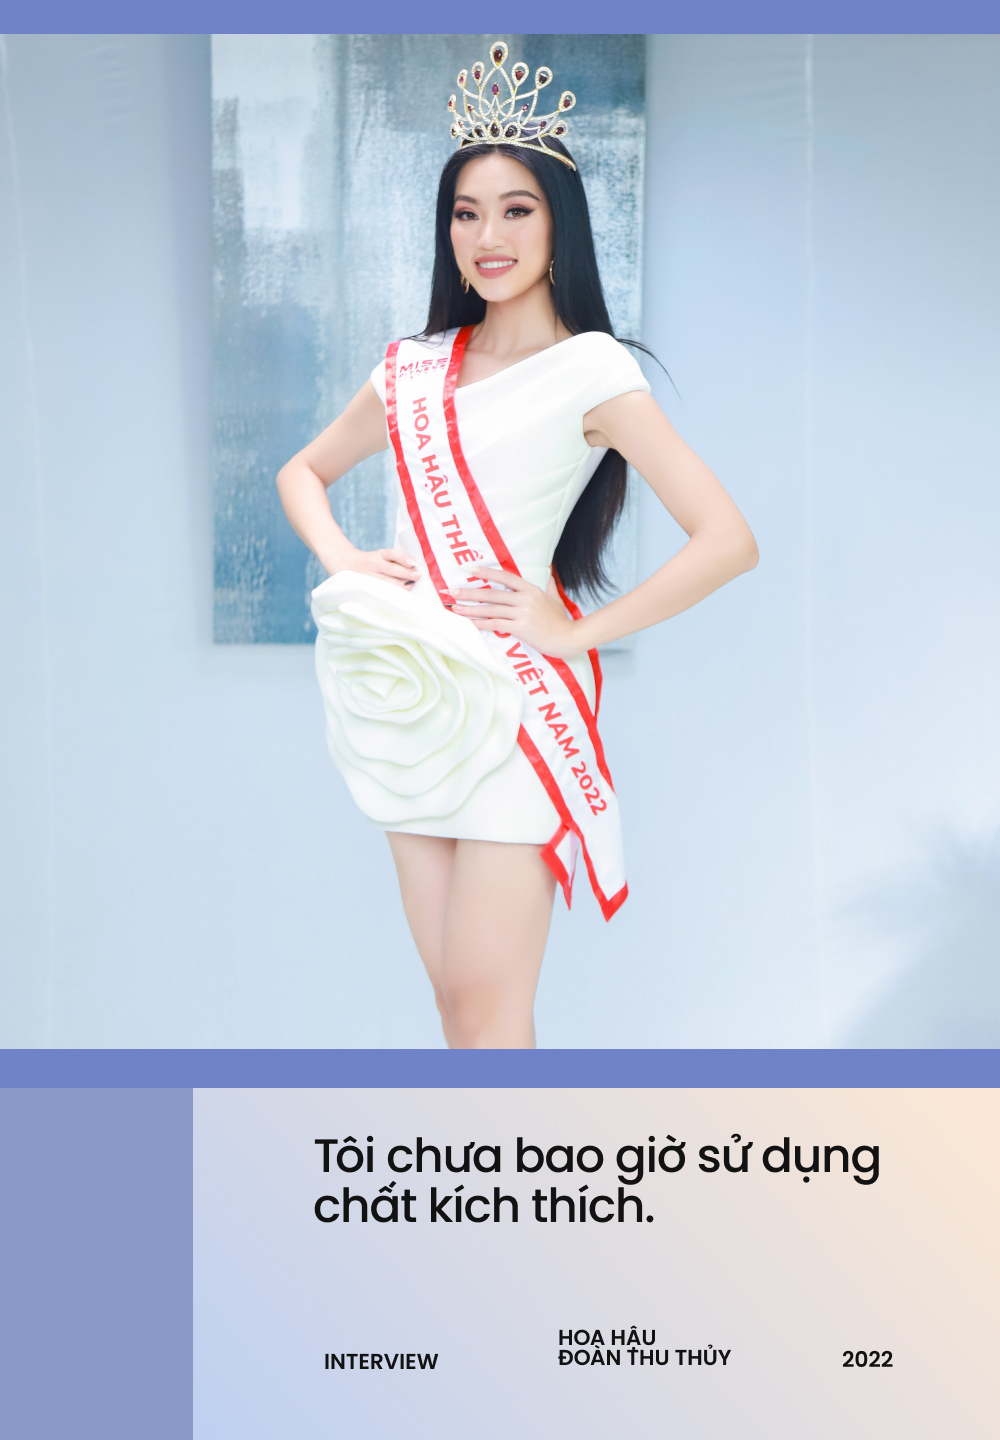 Đoàn Thu Thủy - Hoa hậu Thể thao Việt Nam: Tôi cảm nhận được sức nặng của vương miện, lùm xùm chất kích thích không thể làm ảnh hưởng  - Ảnh 3.